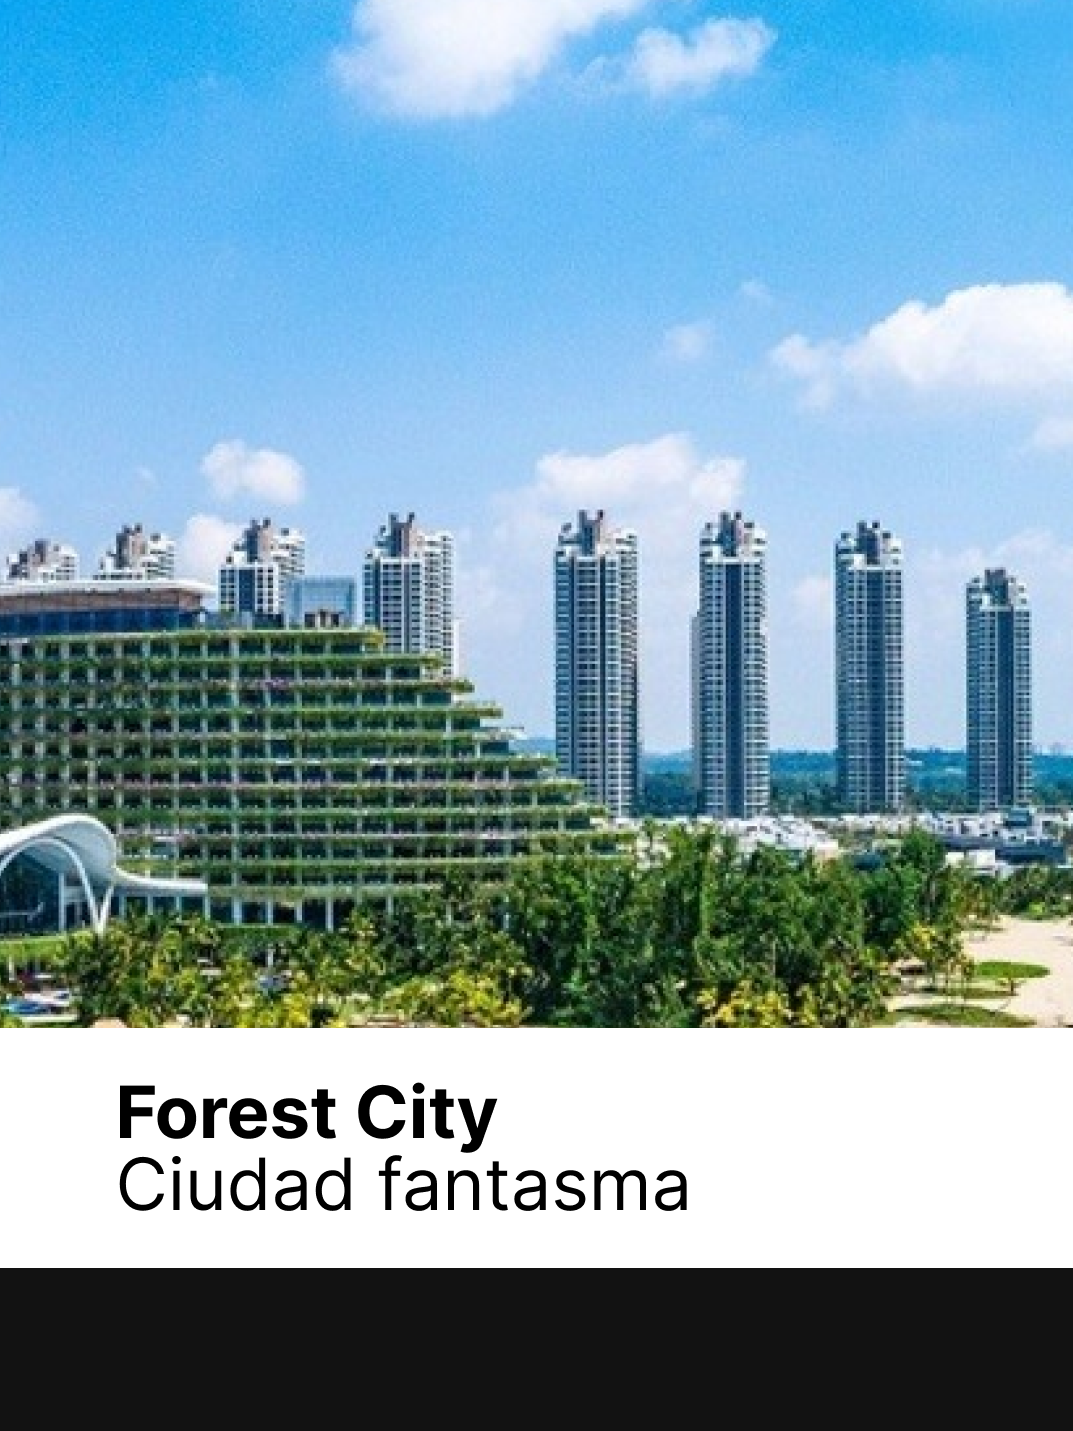 Forest City: la futurista ciudad sin habitantes que muestra la crisis inmobiliara china #vanzinipropiedades #arquitectura #realestatestate #ciudadabandonada